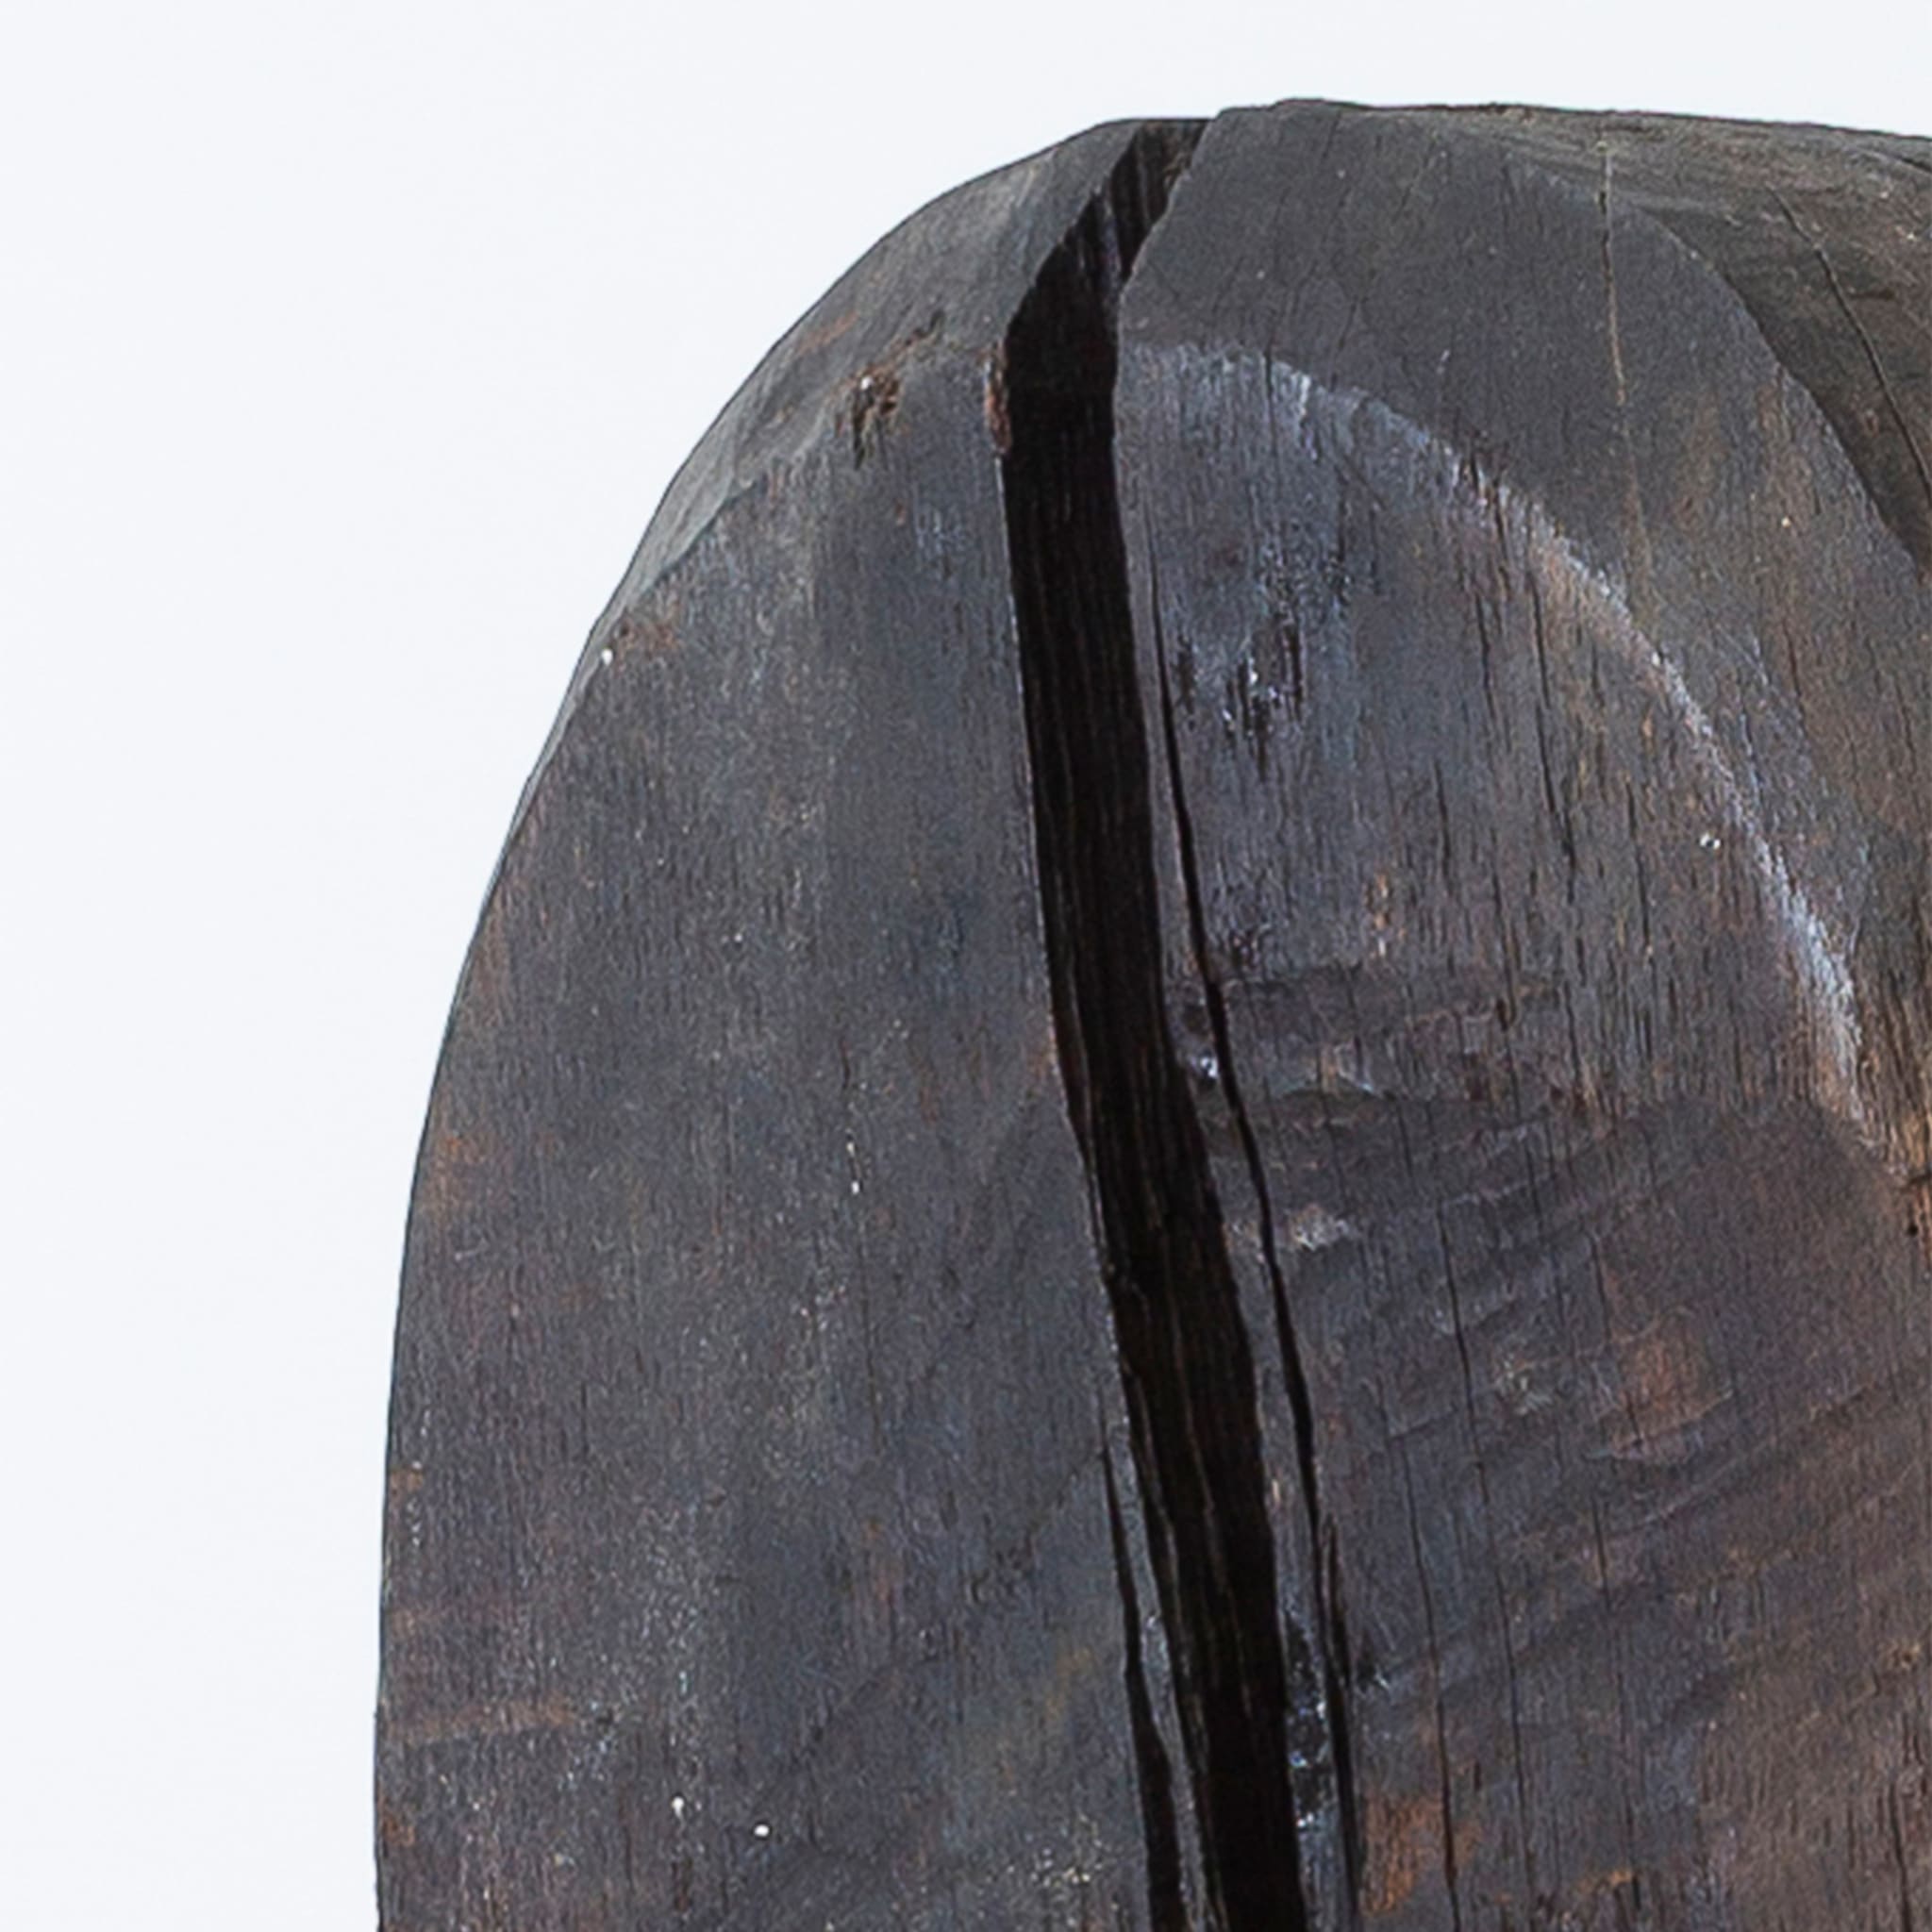 Totem Oak Oil Press Sculpture - Alternative view 1